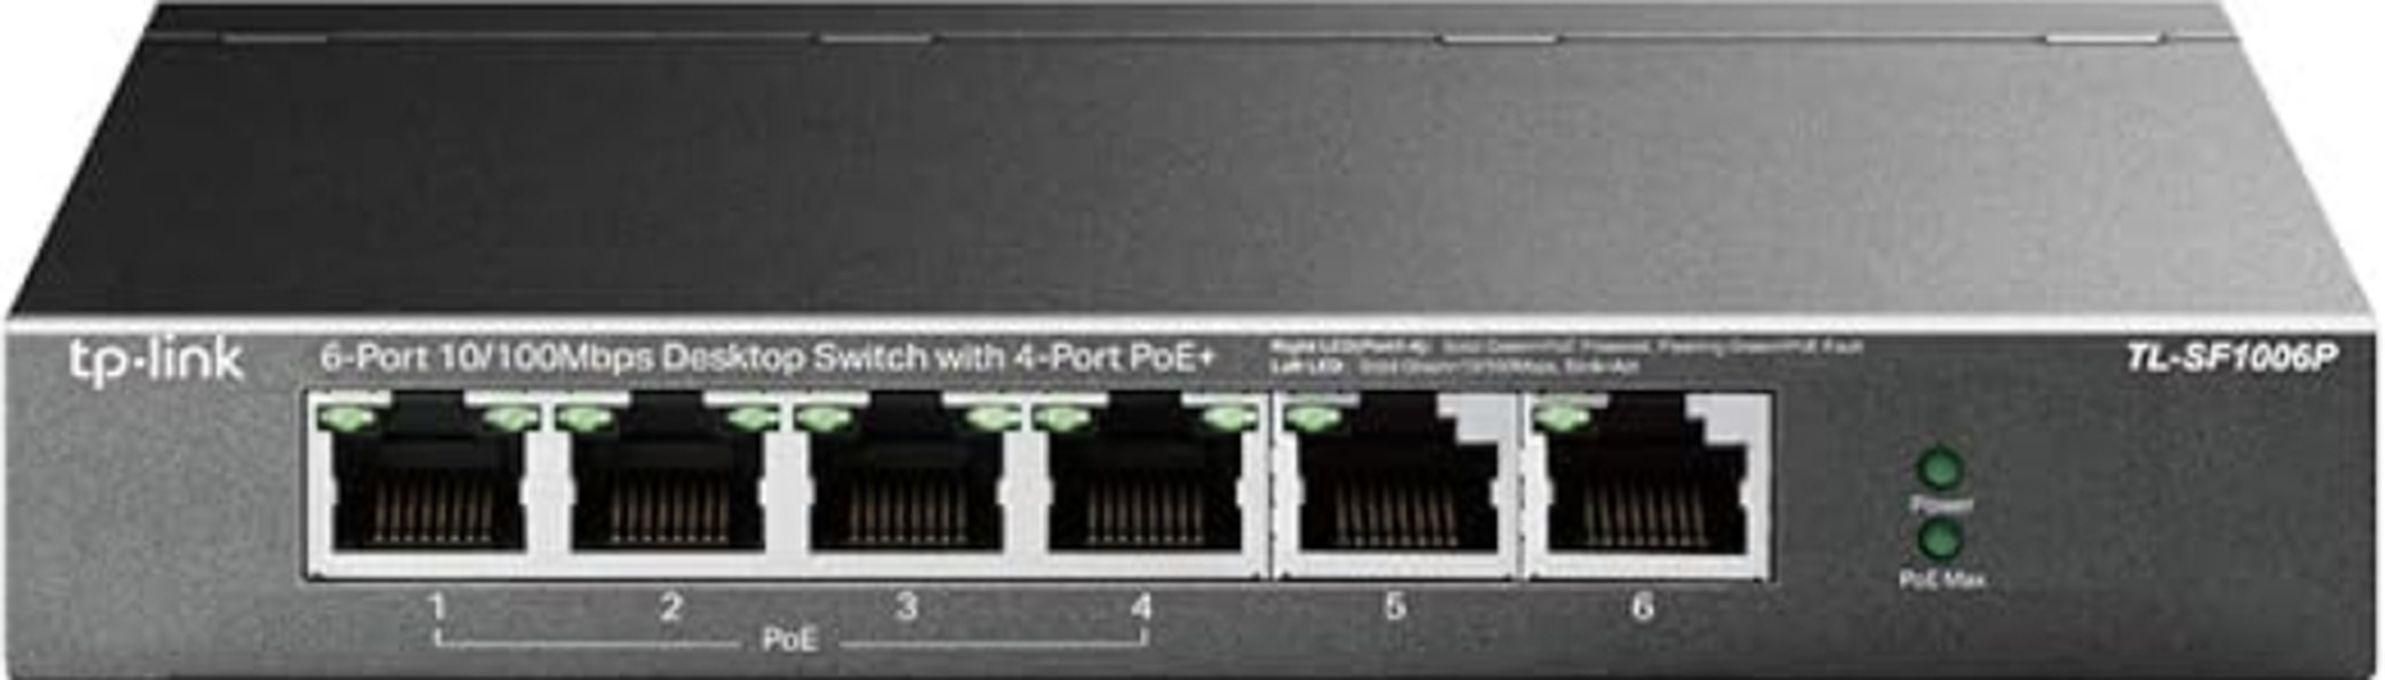 TP-Link 4x 10/100 Mbps 802.3af/at PoE+ Ports, 2x 10/100 Mbps Non-PoE Port’ 67 W PoE Power